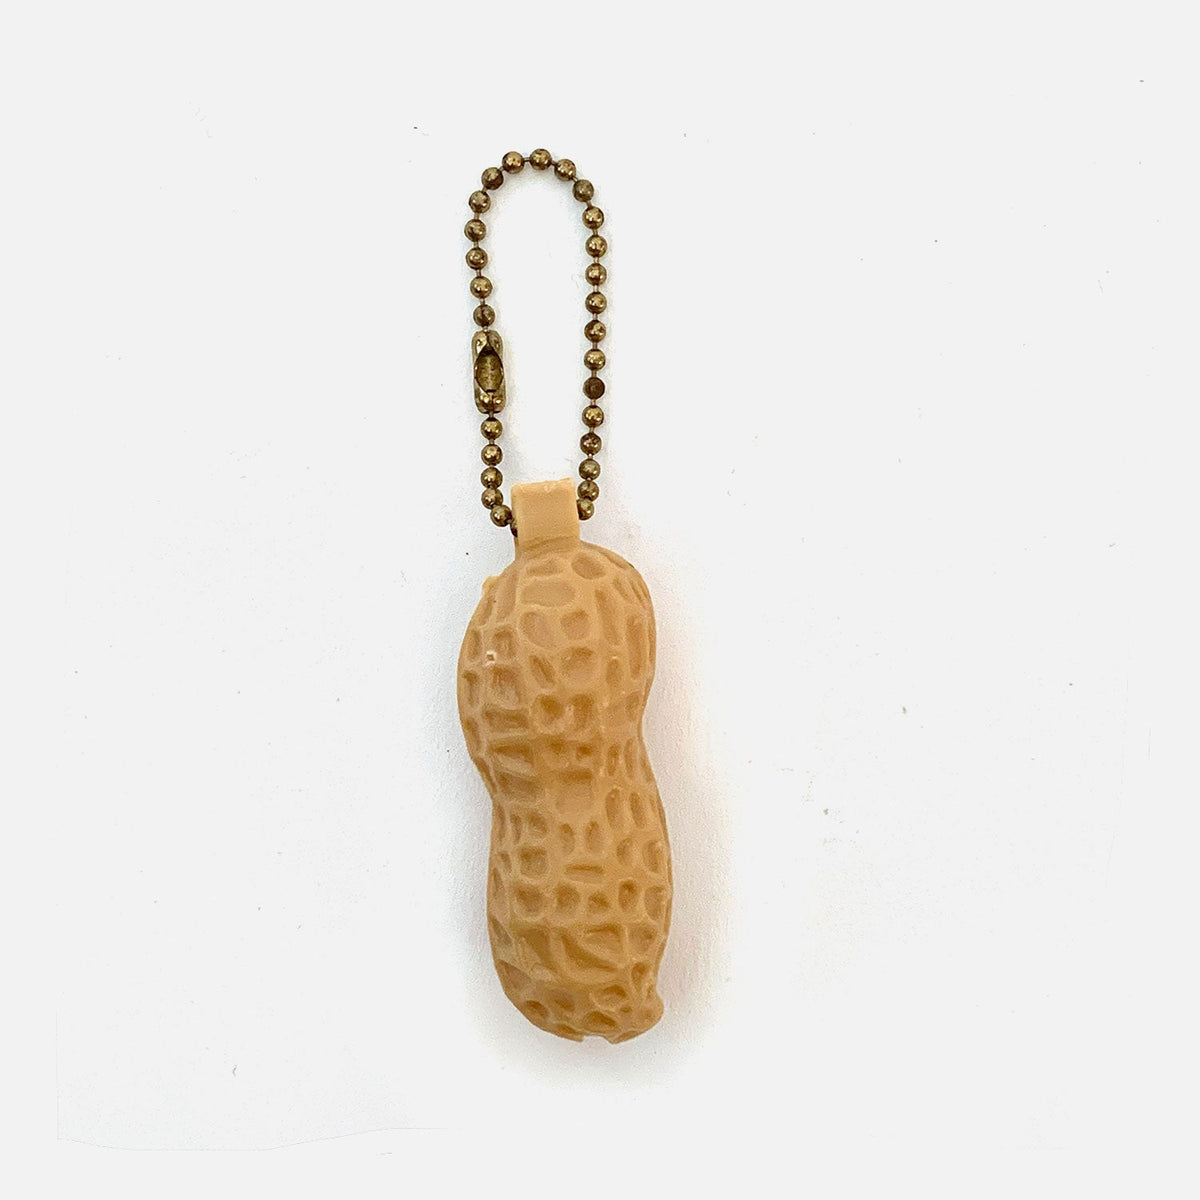 Vintage Peanut Whistle Keychain